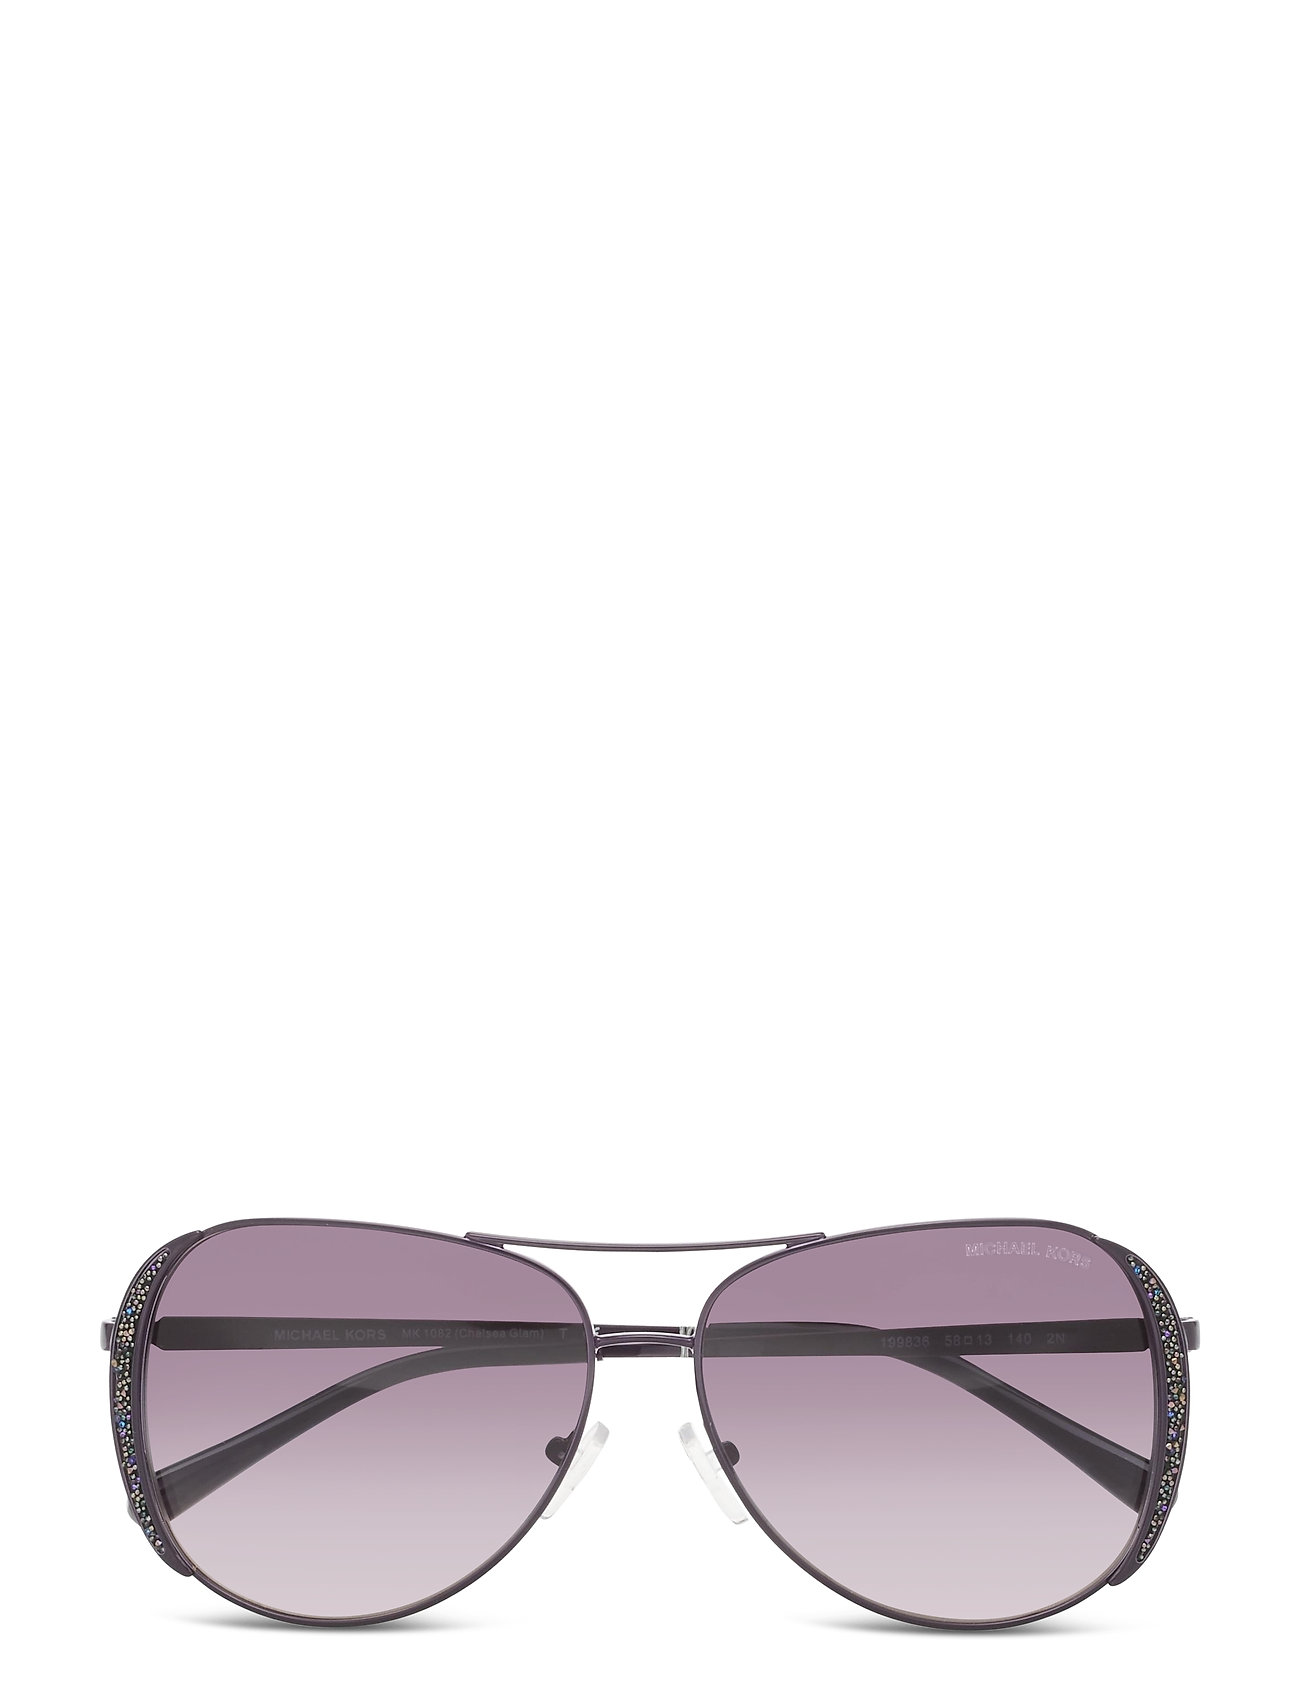 SMOKE GRADIENT Michael Kors Chelsea Glam Pilotbriller Solbriller Blå Michael  Kors Sunglasses aviator solbriller for dame 